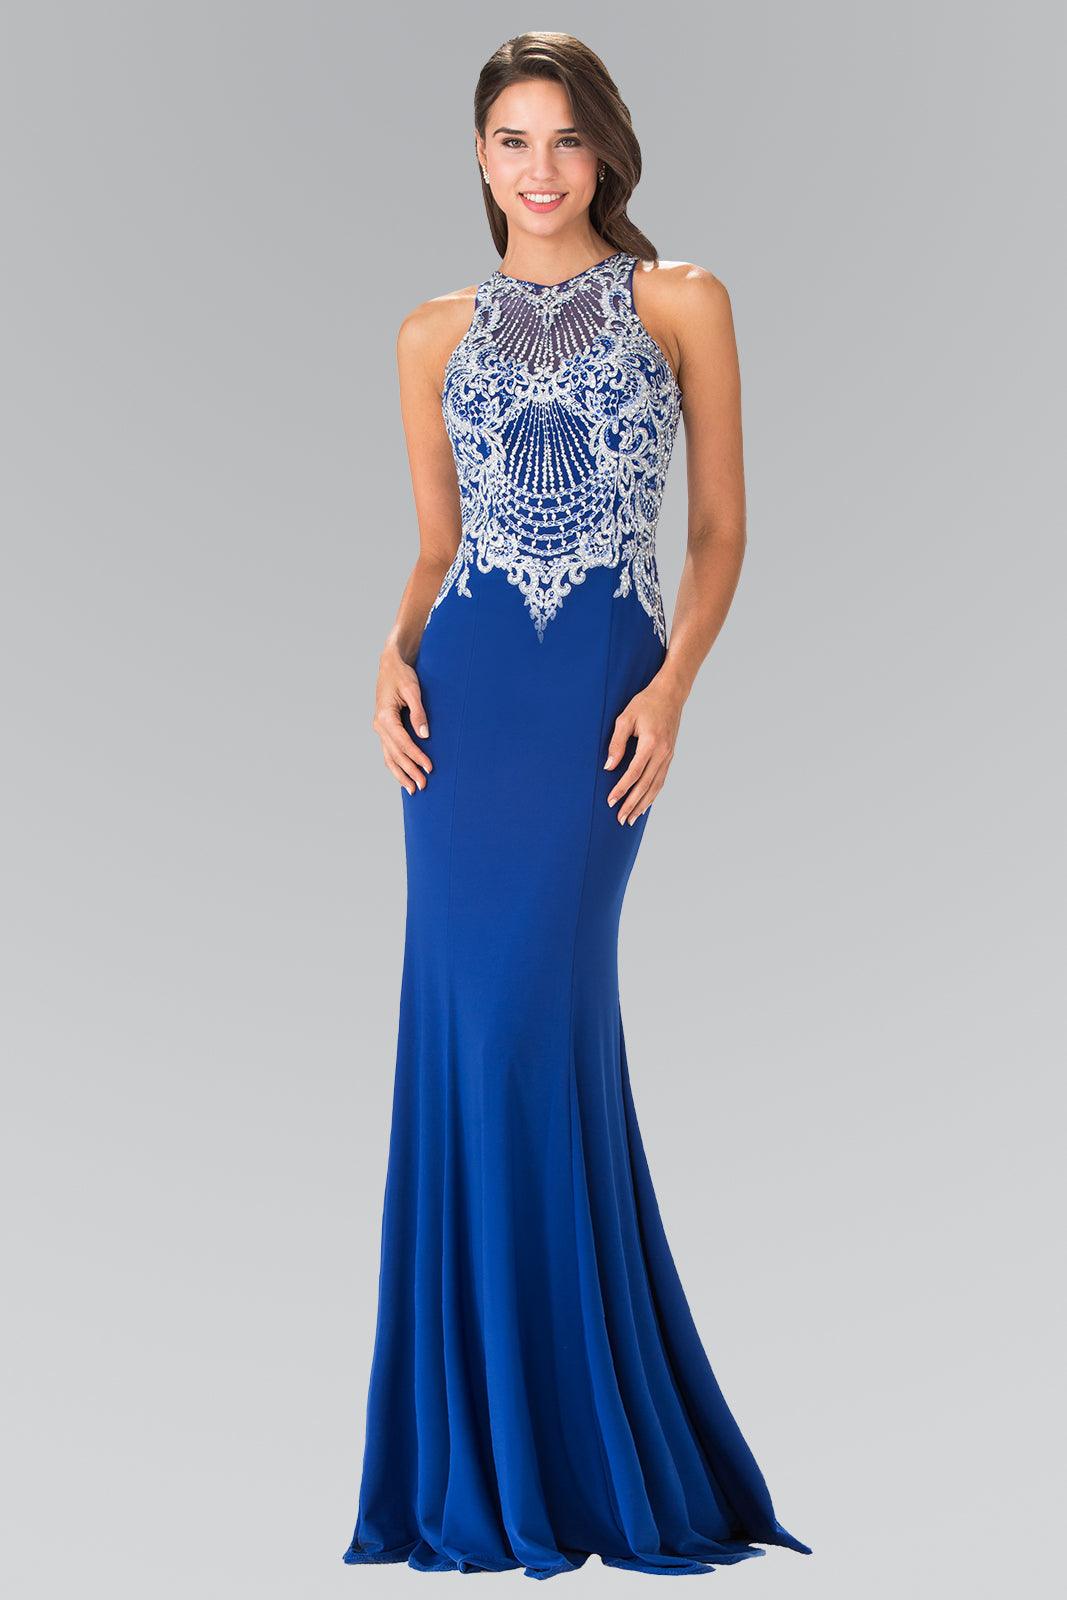 Long Formal Dress Evening Prom Gown - The Dress Outlet Elizabeth K